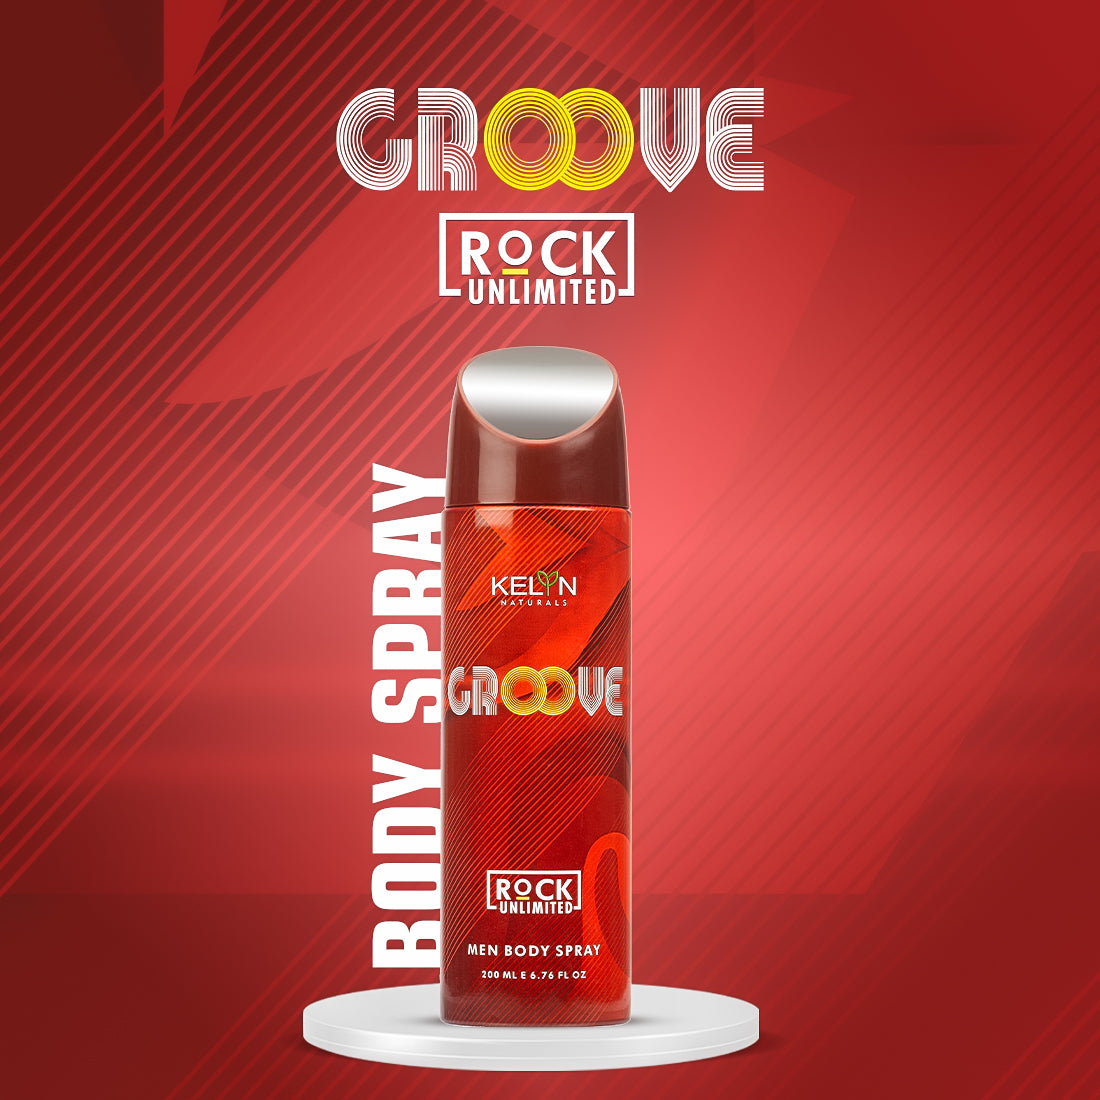 Groove, Dapper Deodorant for Men Body Spray (Pack of 2) 200 ml each